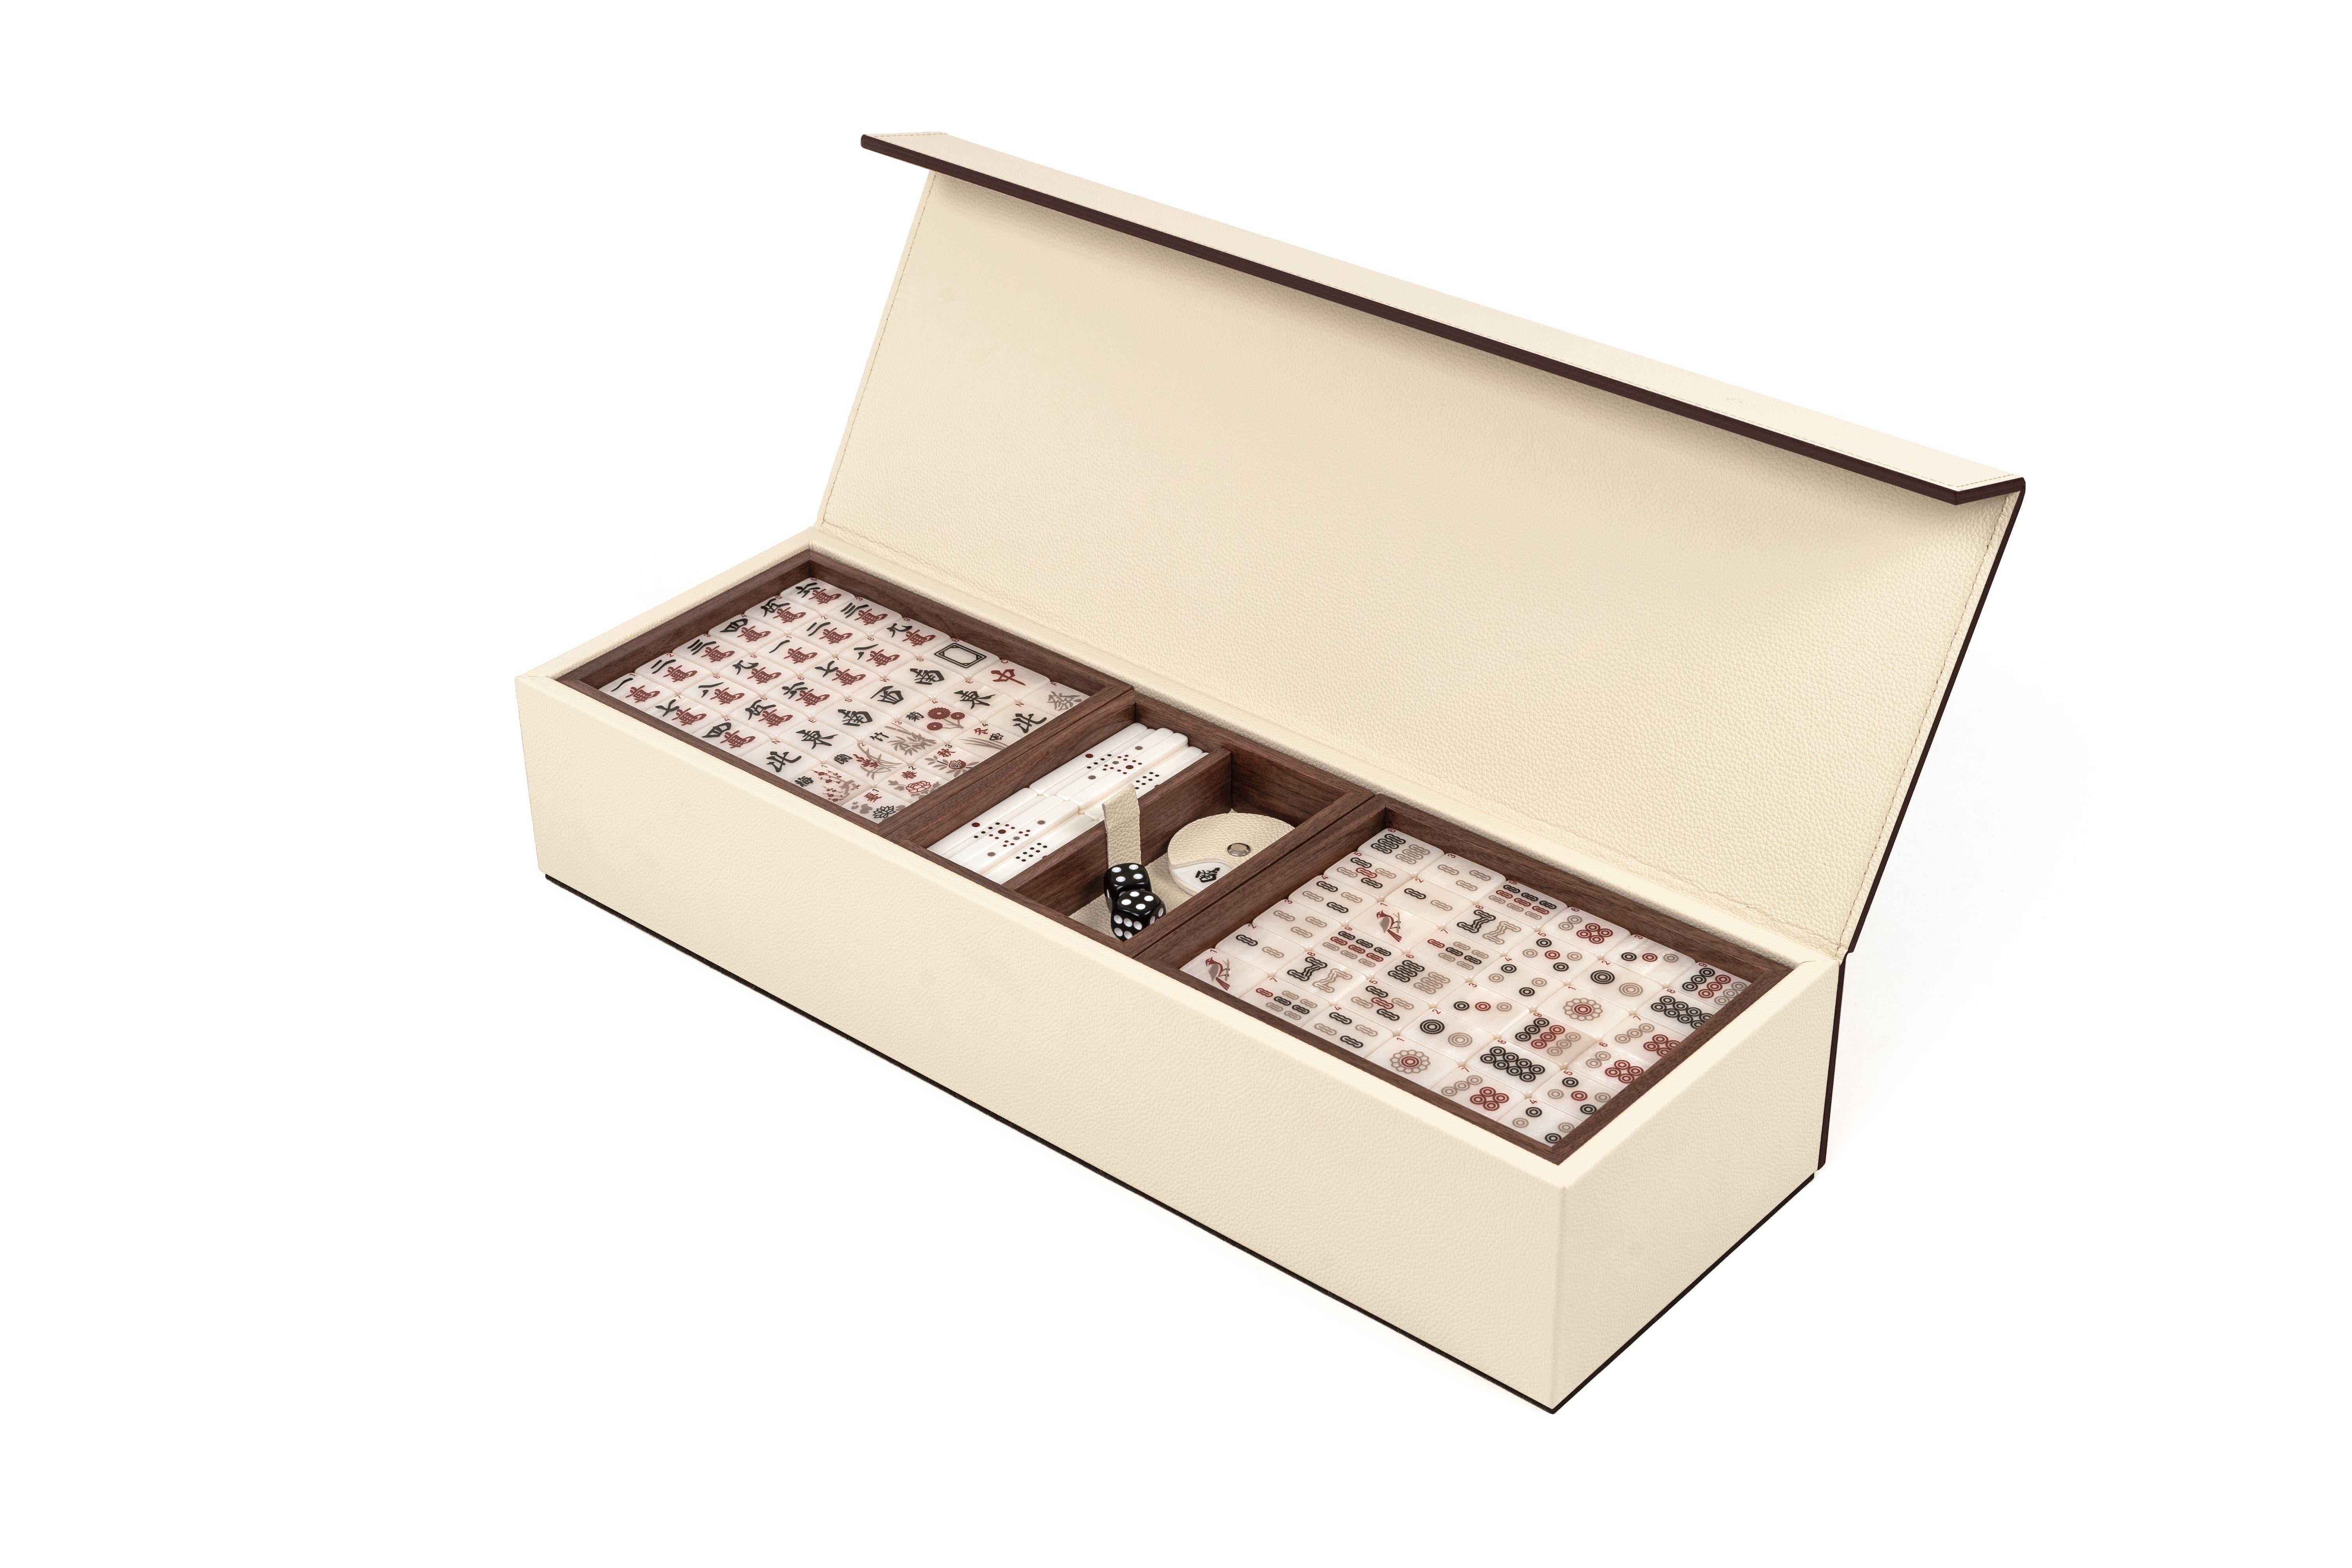 Unser brandneues Mahjong, eine komplette Neugestaltung für eines der beliebtesten und meistgespielten Spiele weltweit. 

Unser Mahjong ist komplett mit echtem Kalbsleder bezogen und wird in einer luxuriösen Holzbox mit Magnetverschluss geliefert.